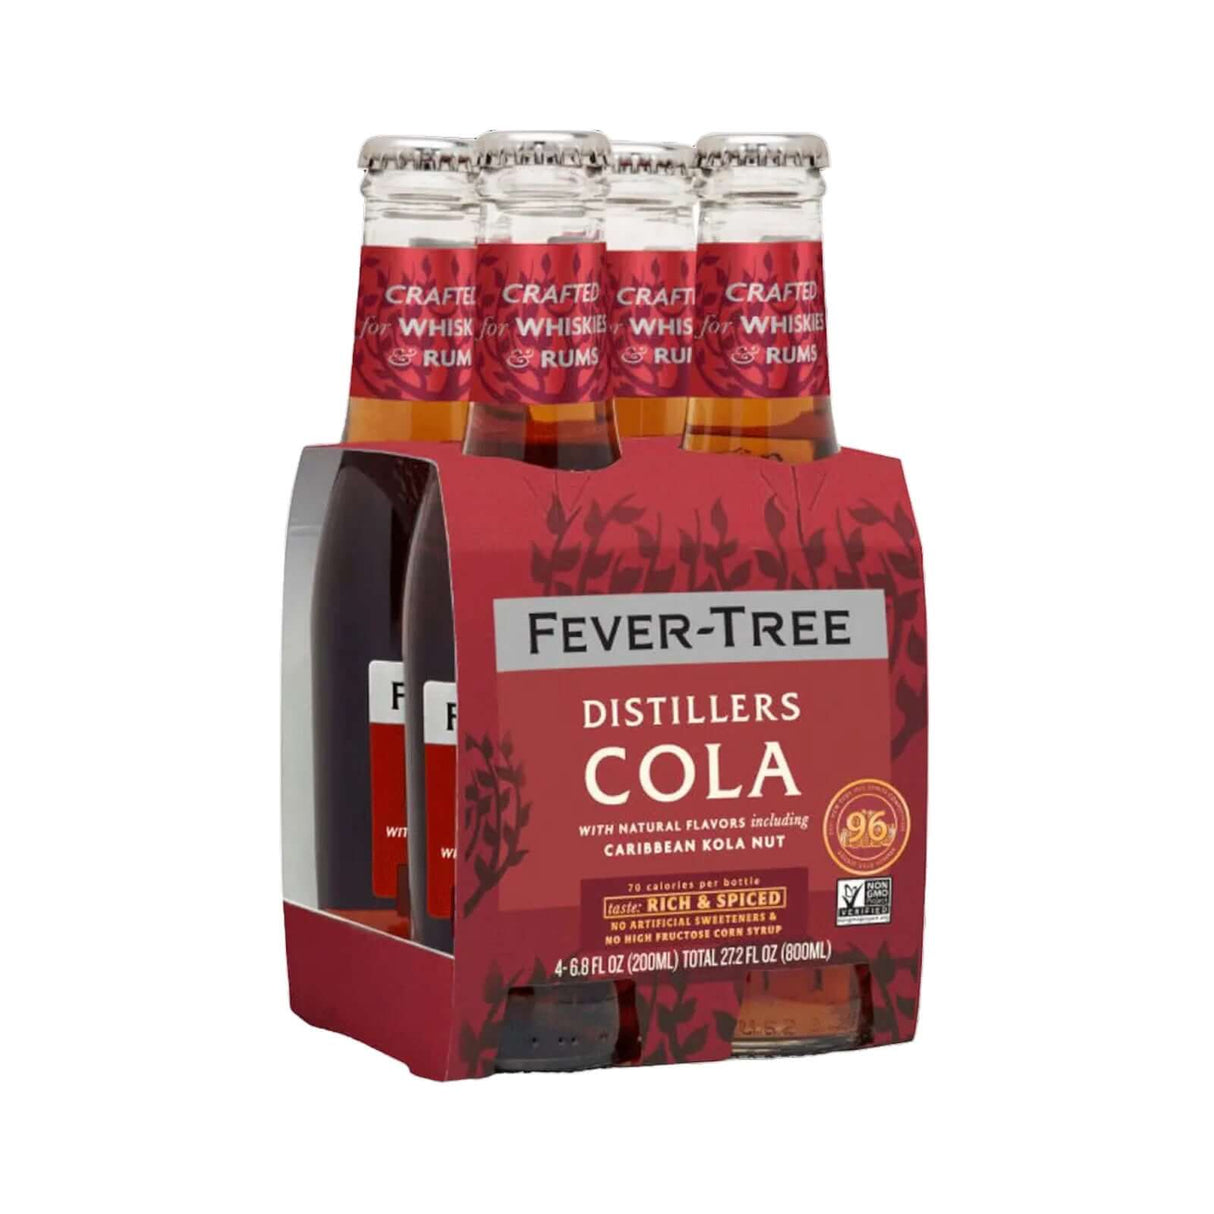 Fever-Tree Distillers Cola